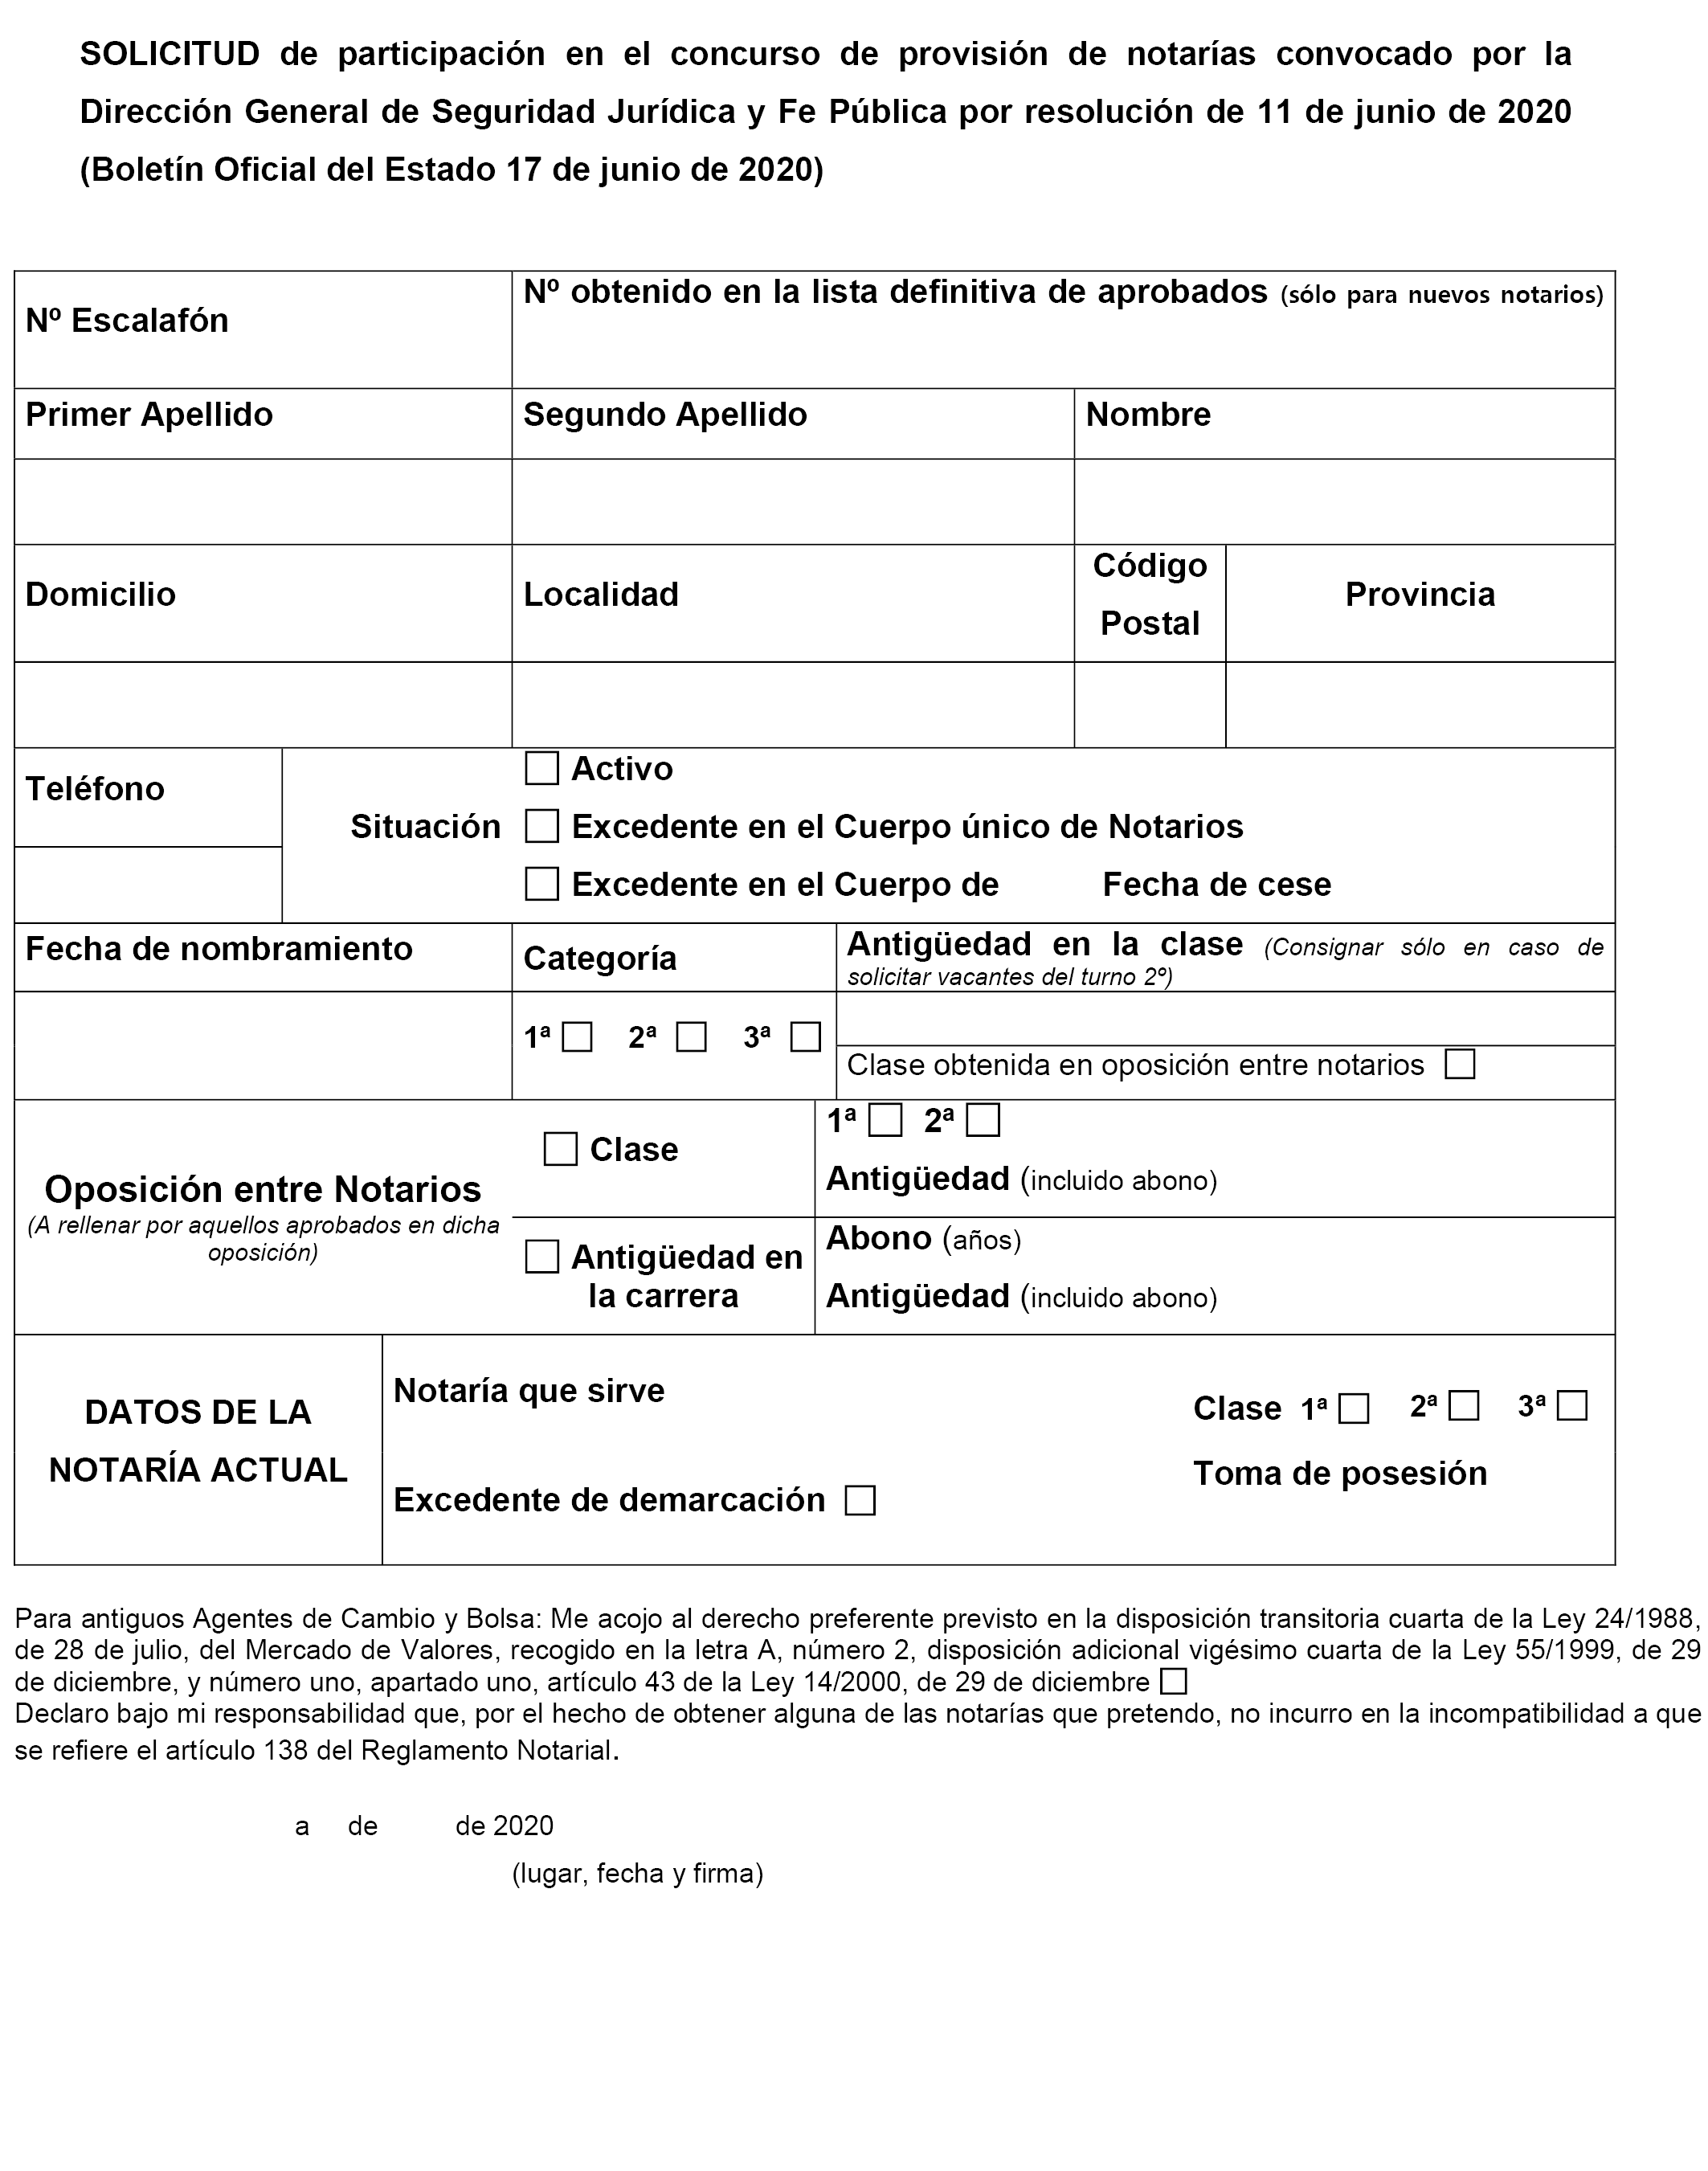 BOE.es - BOE-A-2020-6257 Resolución de 11 de junio de 2020, de la Dirección  General de Seguridad Jurídica y Fe Pública, por la que se convoca concurso  para la provisión de notarías vacantes.